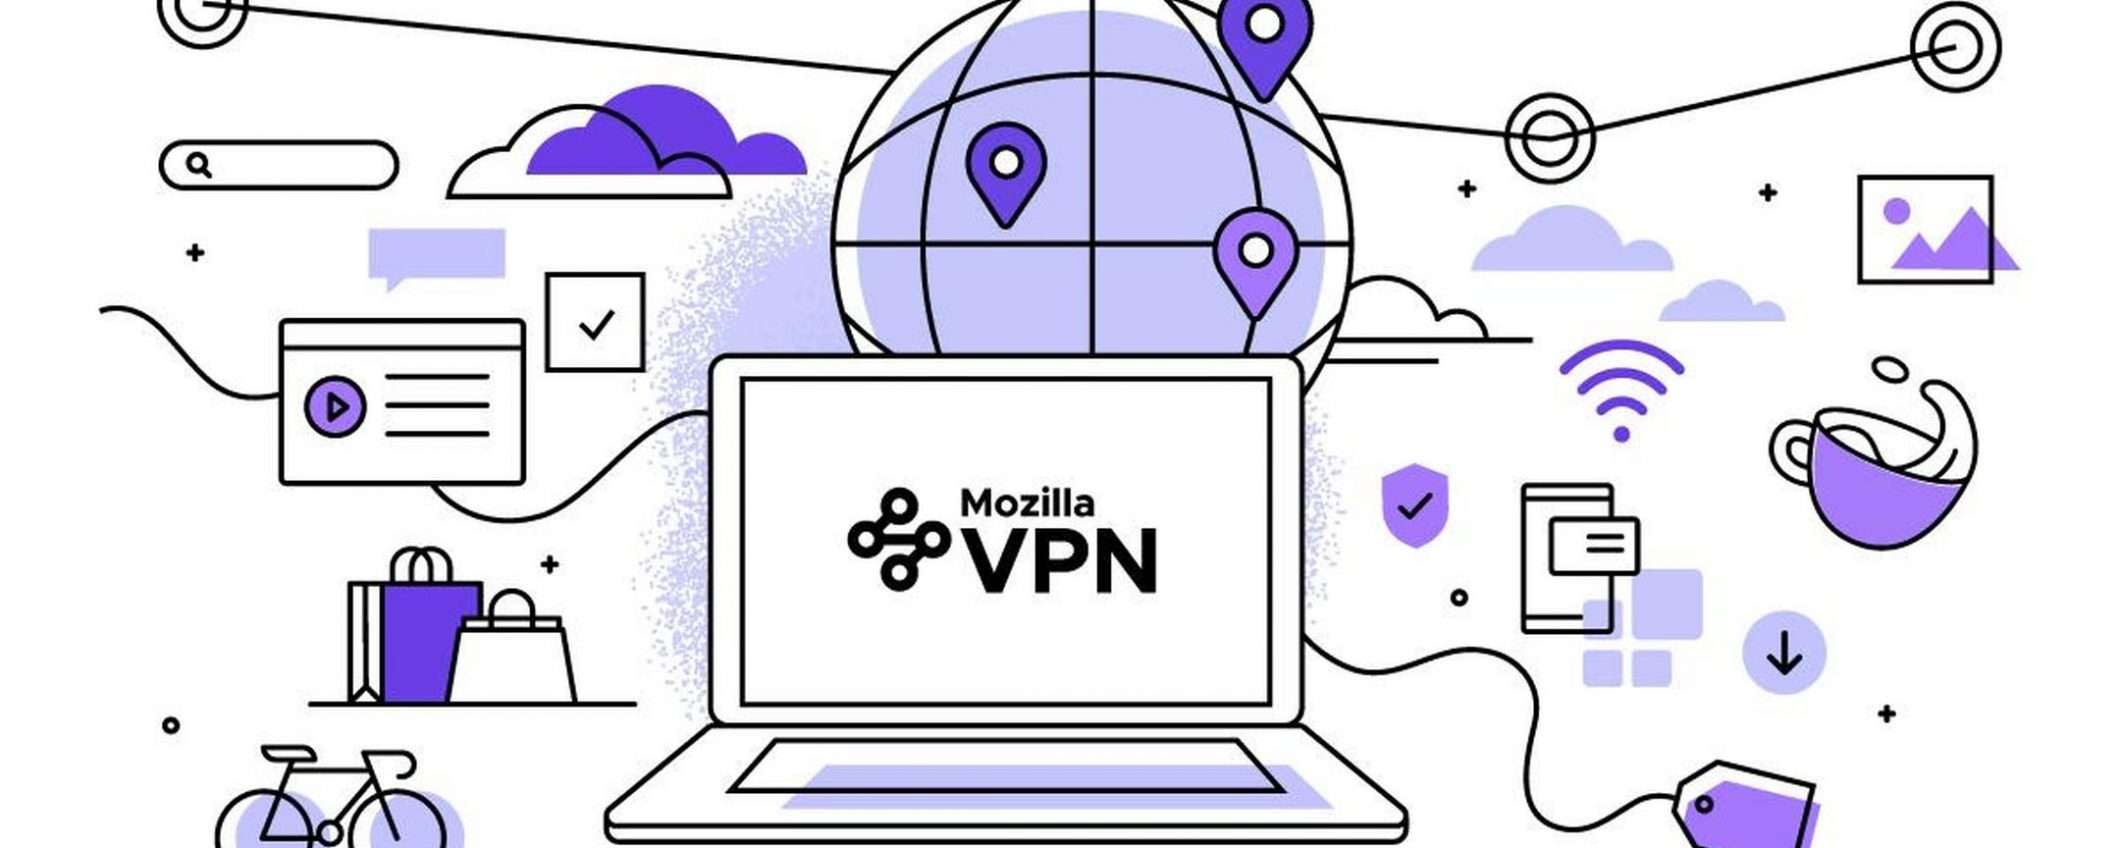 Mozilla VPN arriva in Italia a 4,99 euro/mese